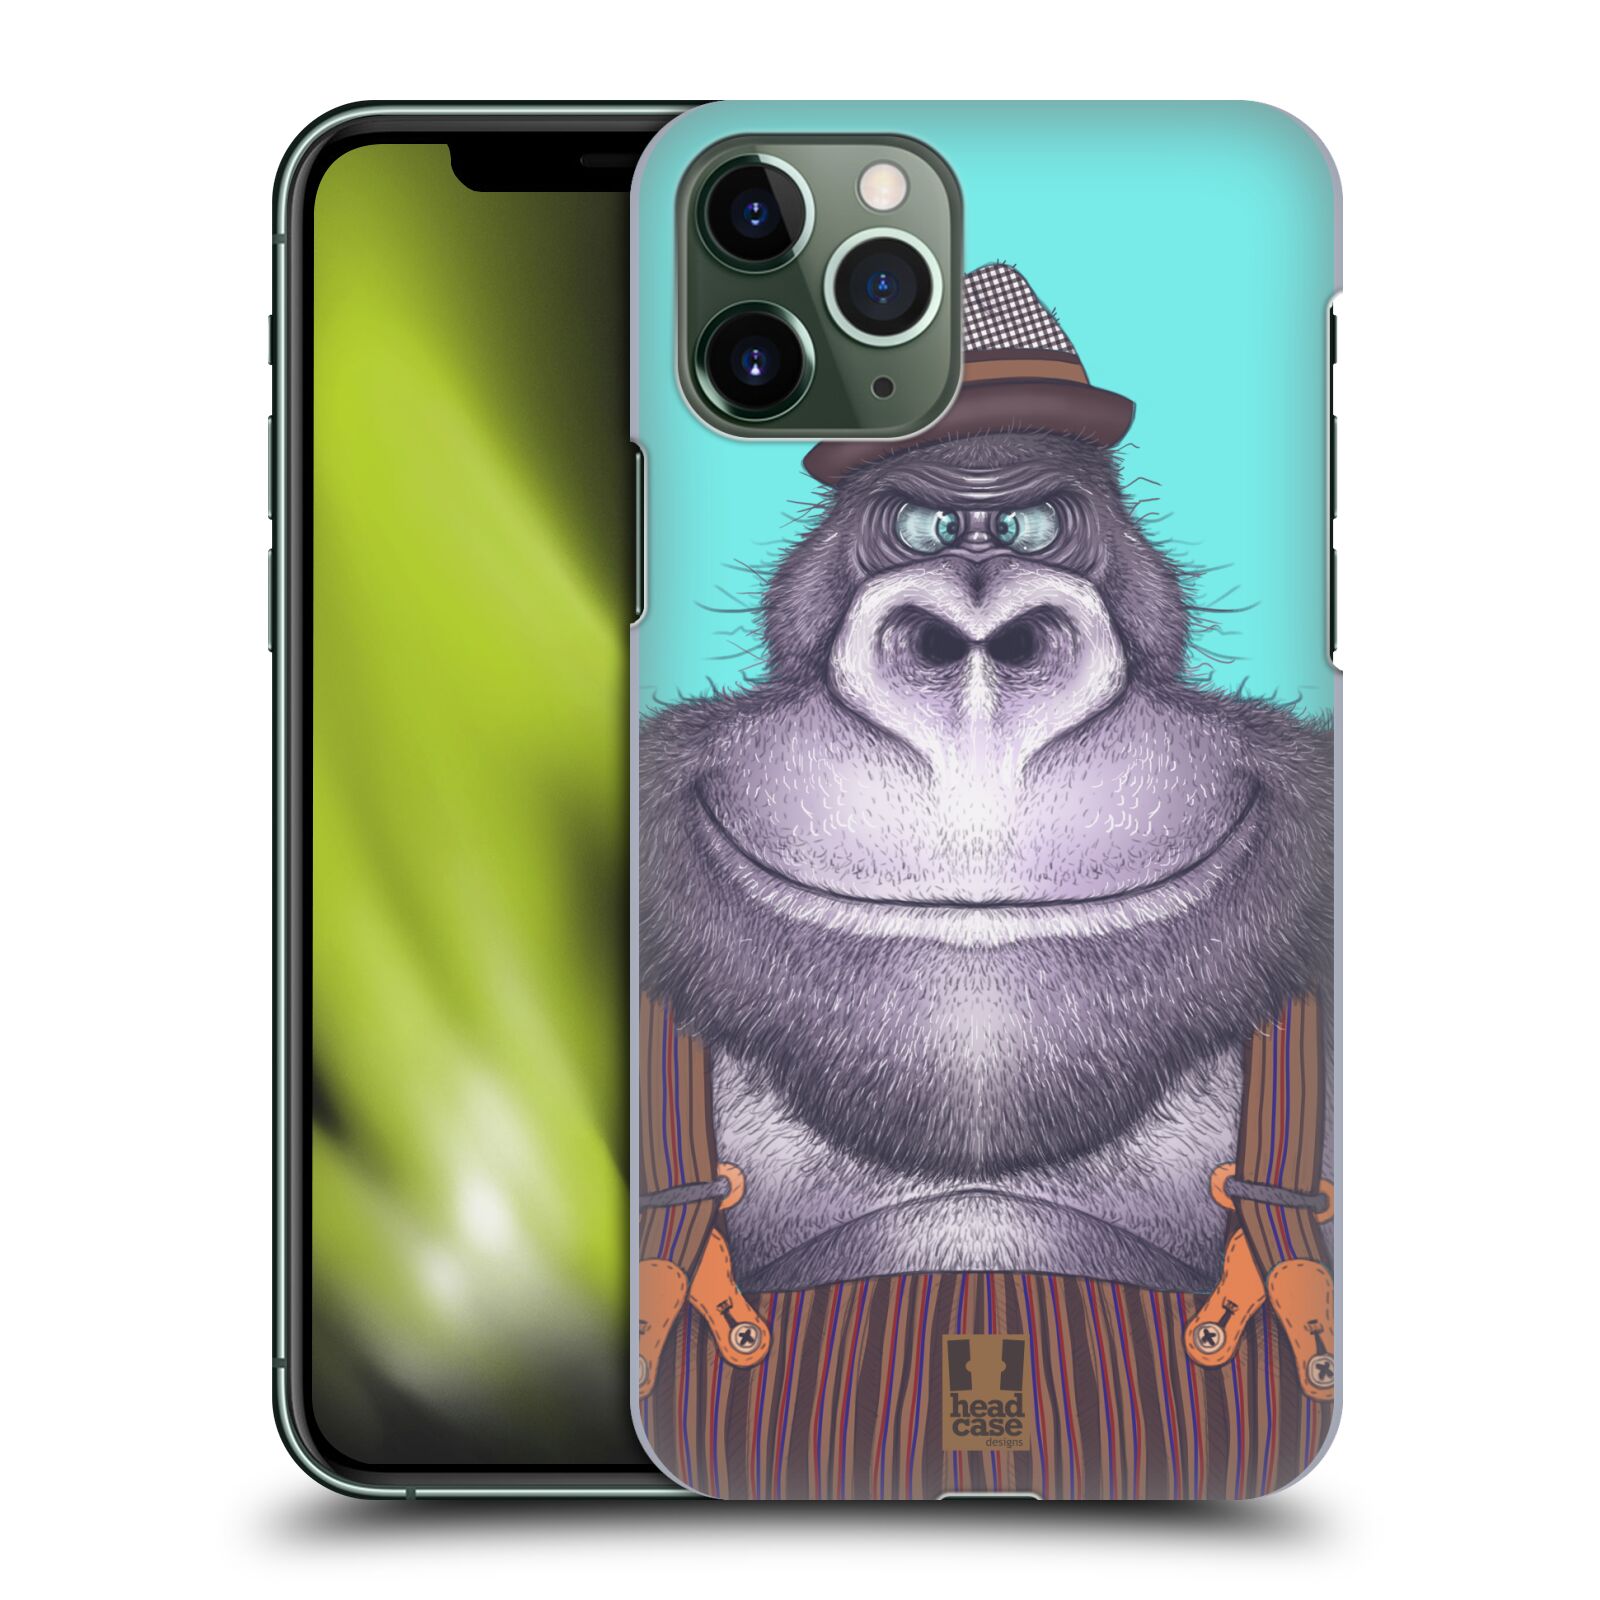 Pouzdro na mobil Apple Iphone 11 PRO - HEAD CASE - vzor Kreslená zvířátka gorila